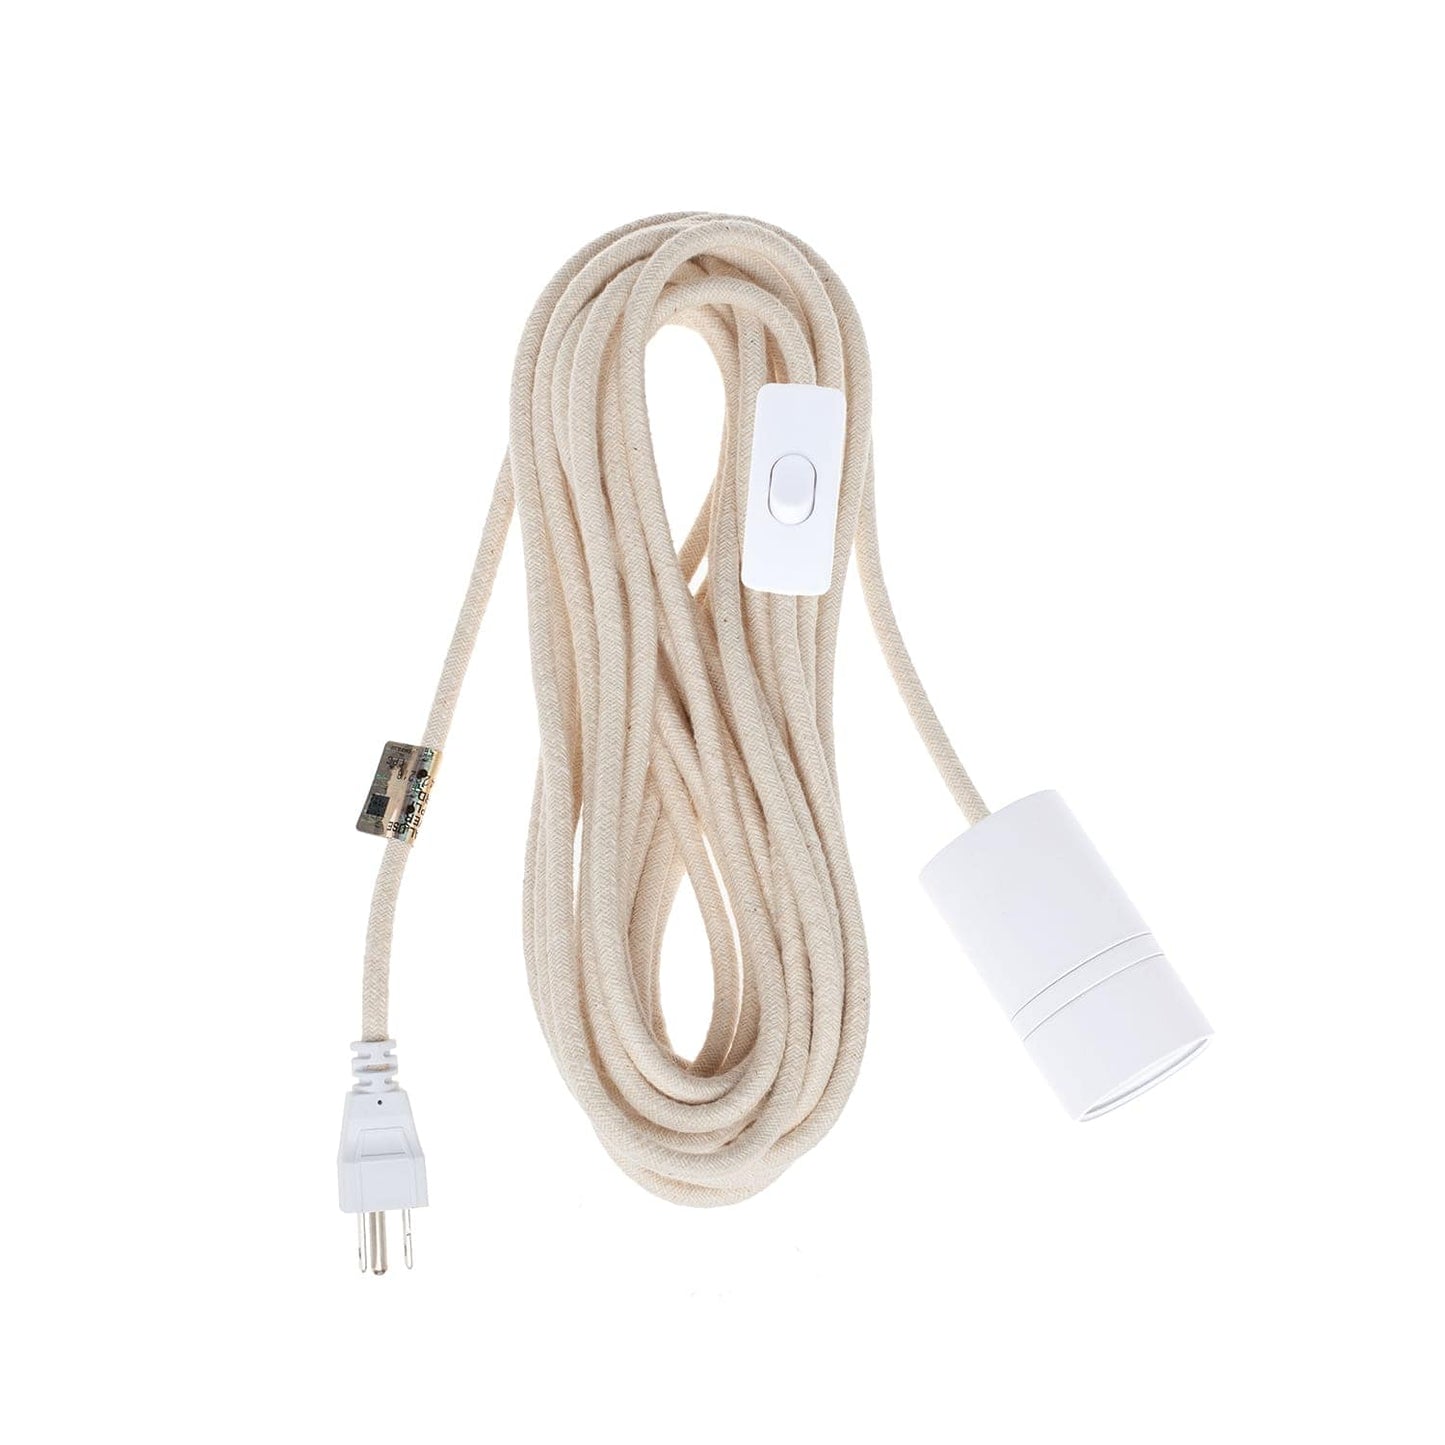 AiO White Chroma Plug-In Cord Set